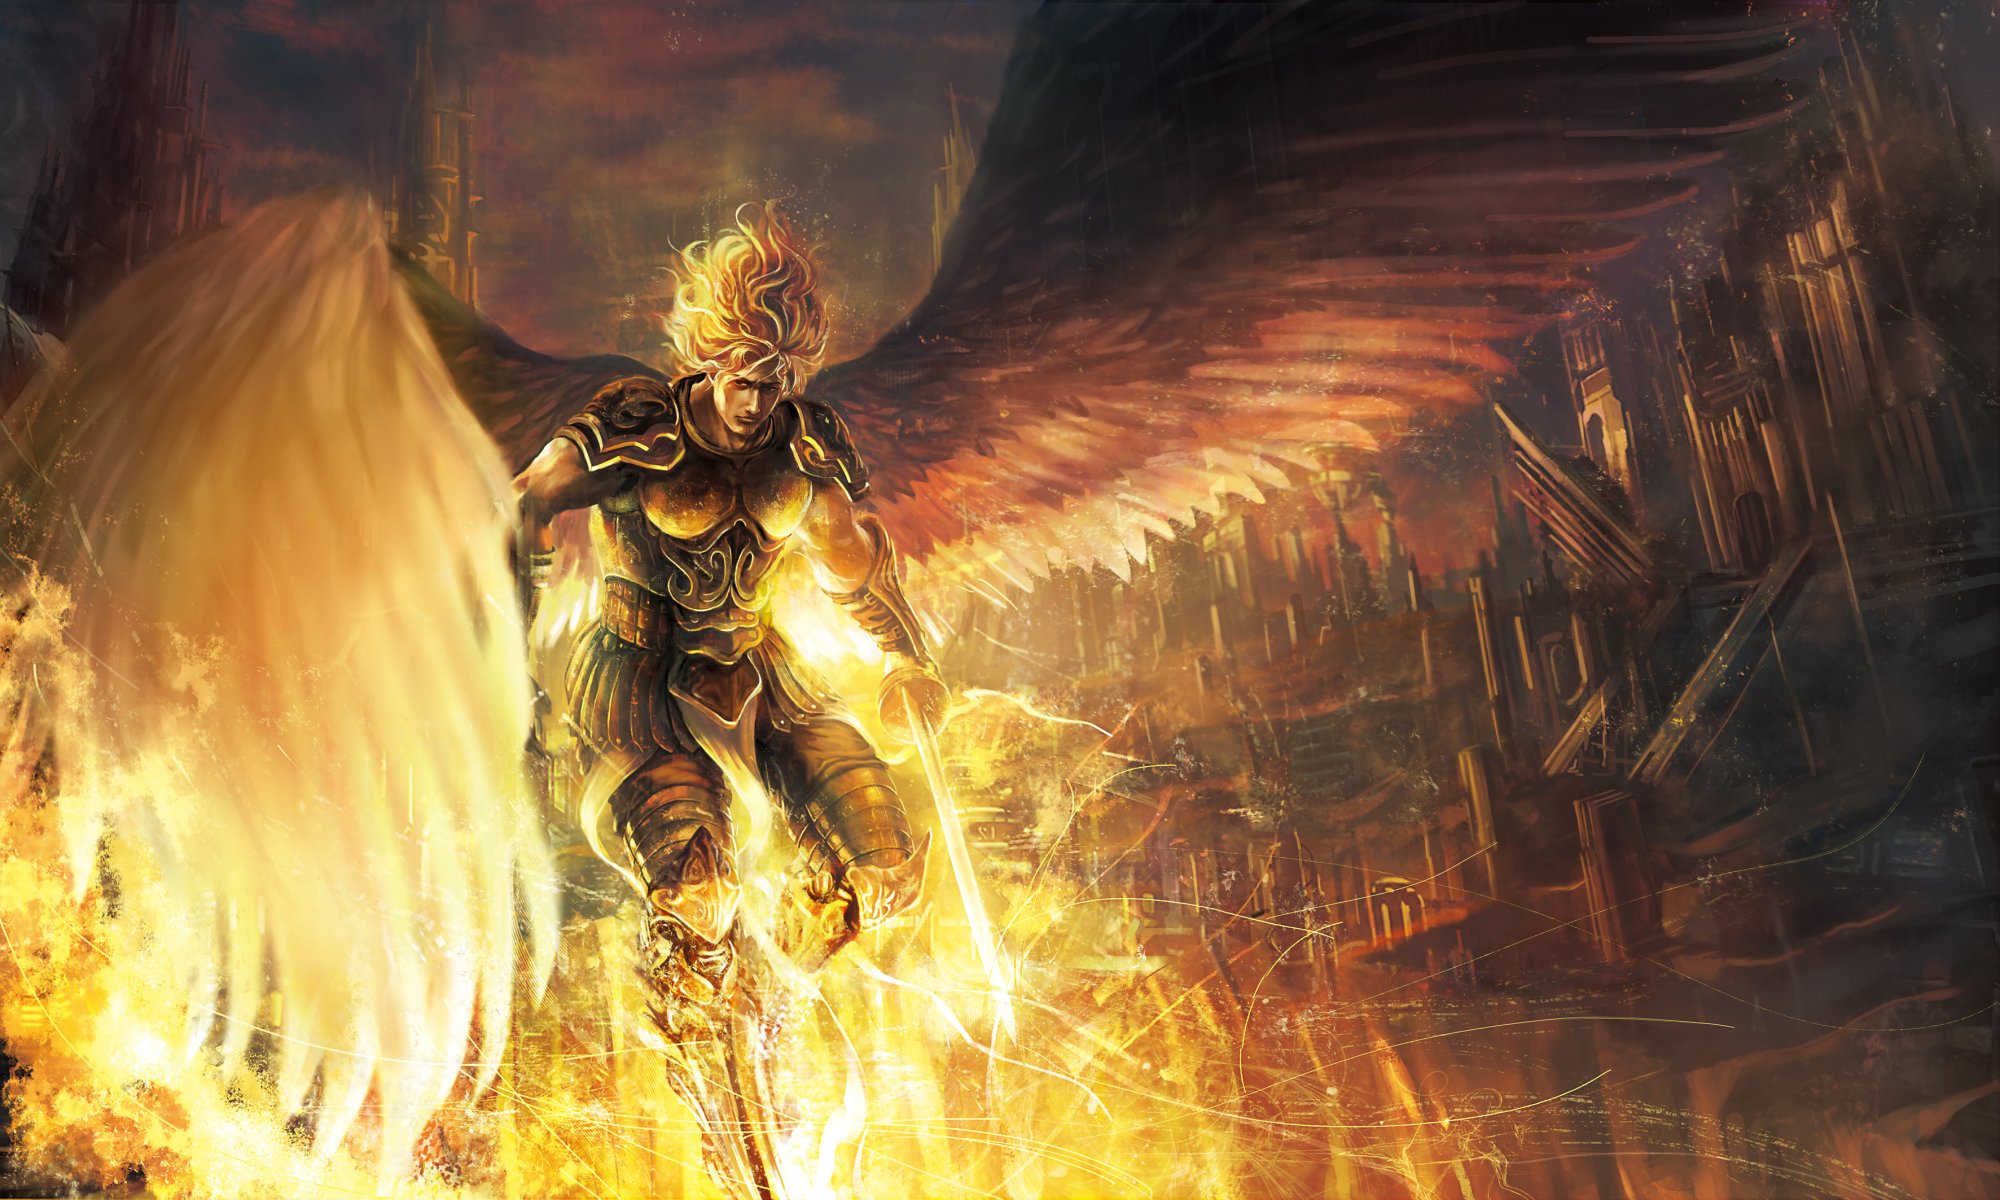 Арт ангел с огненными крыльями над городом Обои на рабочий стол.